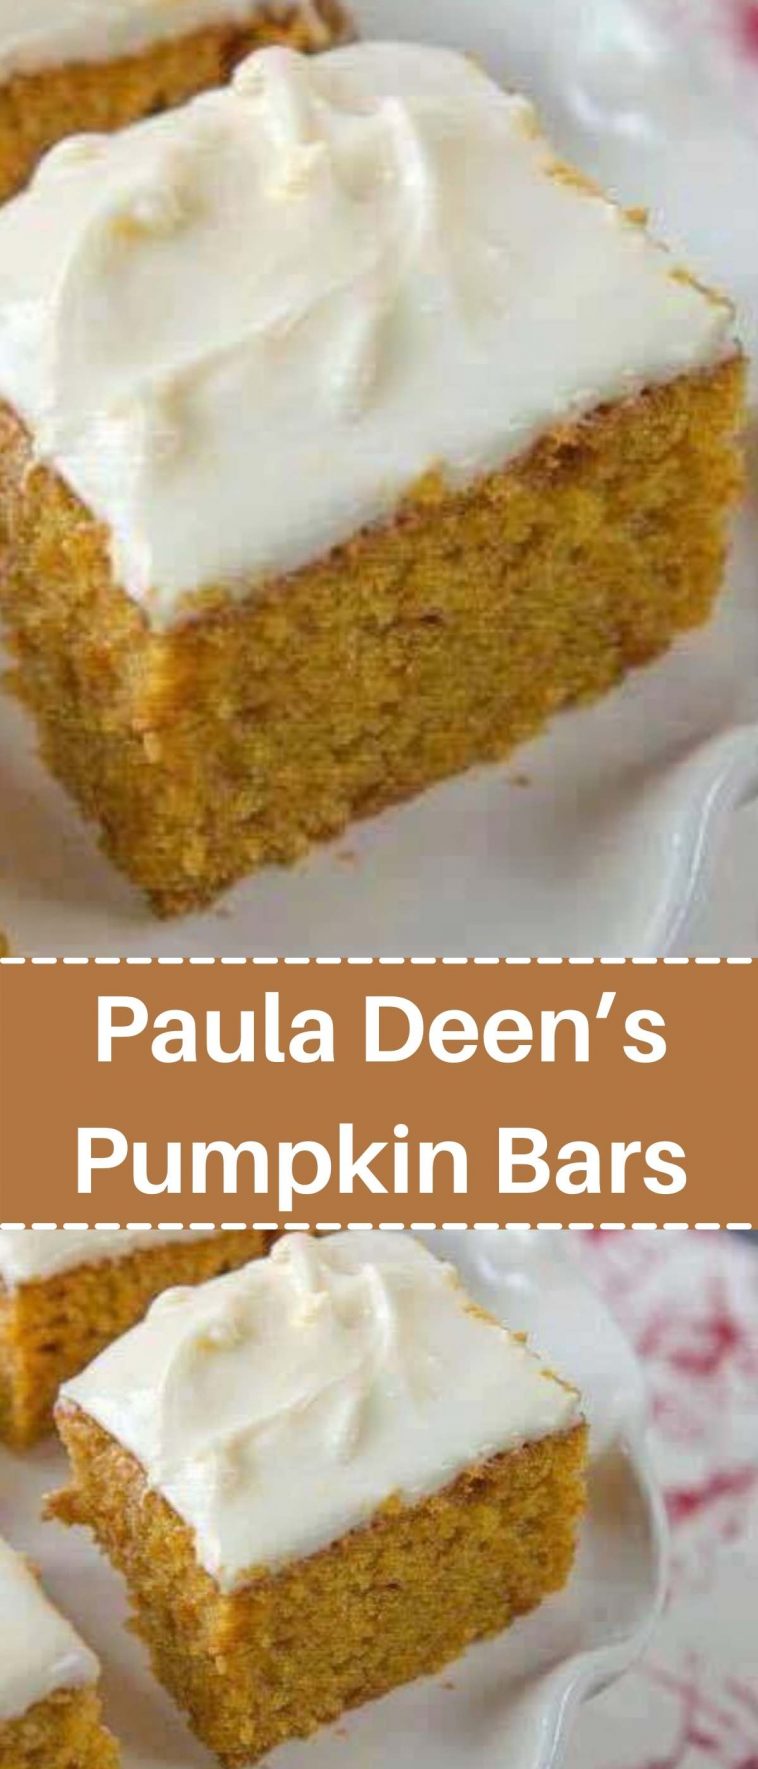 Paula Deen’s Pumpkin Bars